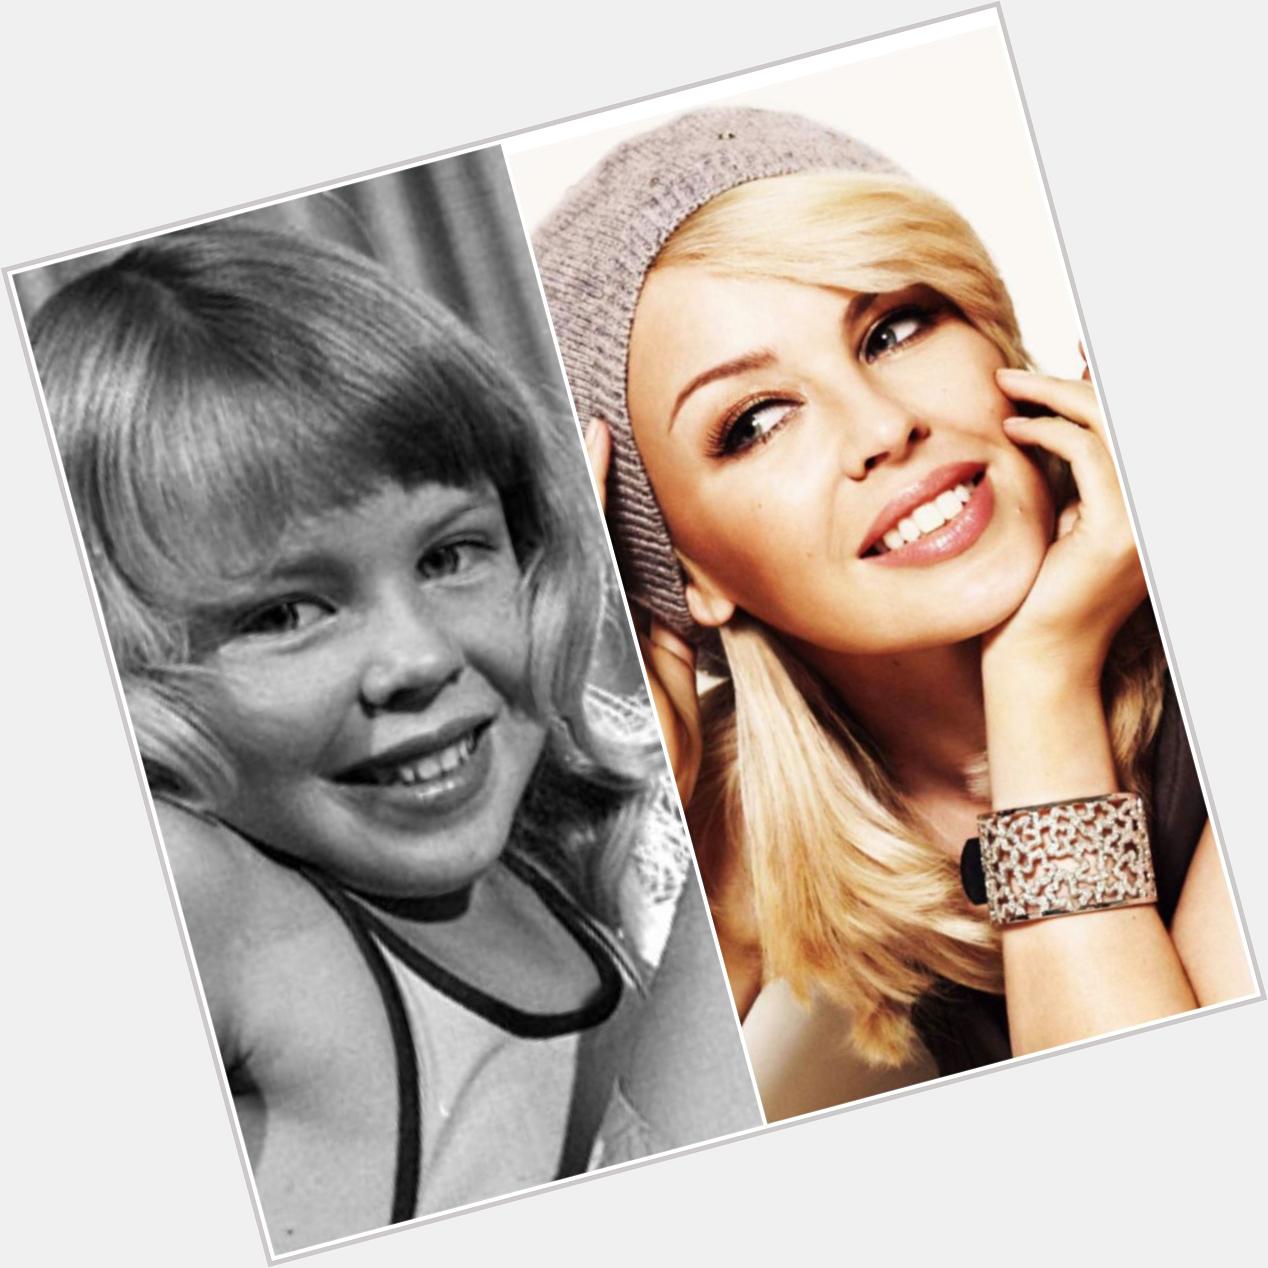 Hoy de   Uno de sus sencillos más exitosos «Can\t Get You Out Of My Head»
Happy Birthday Kylie Minogue! 